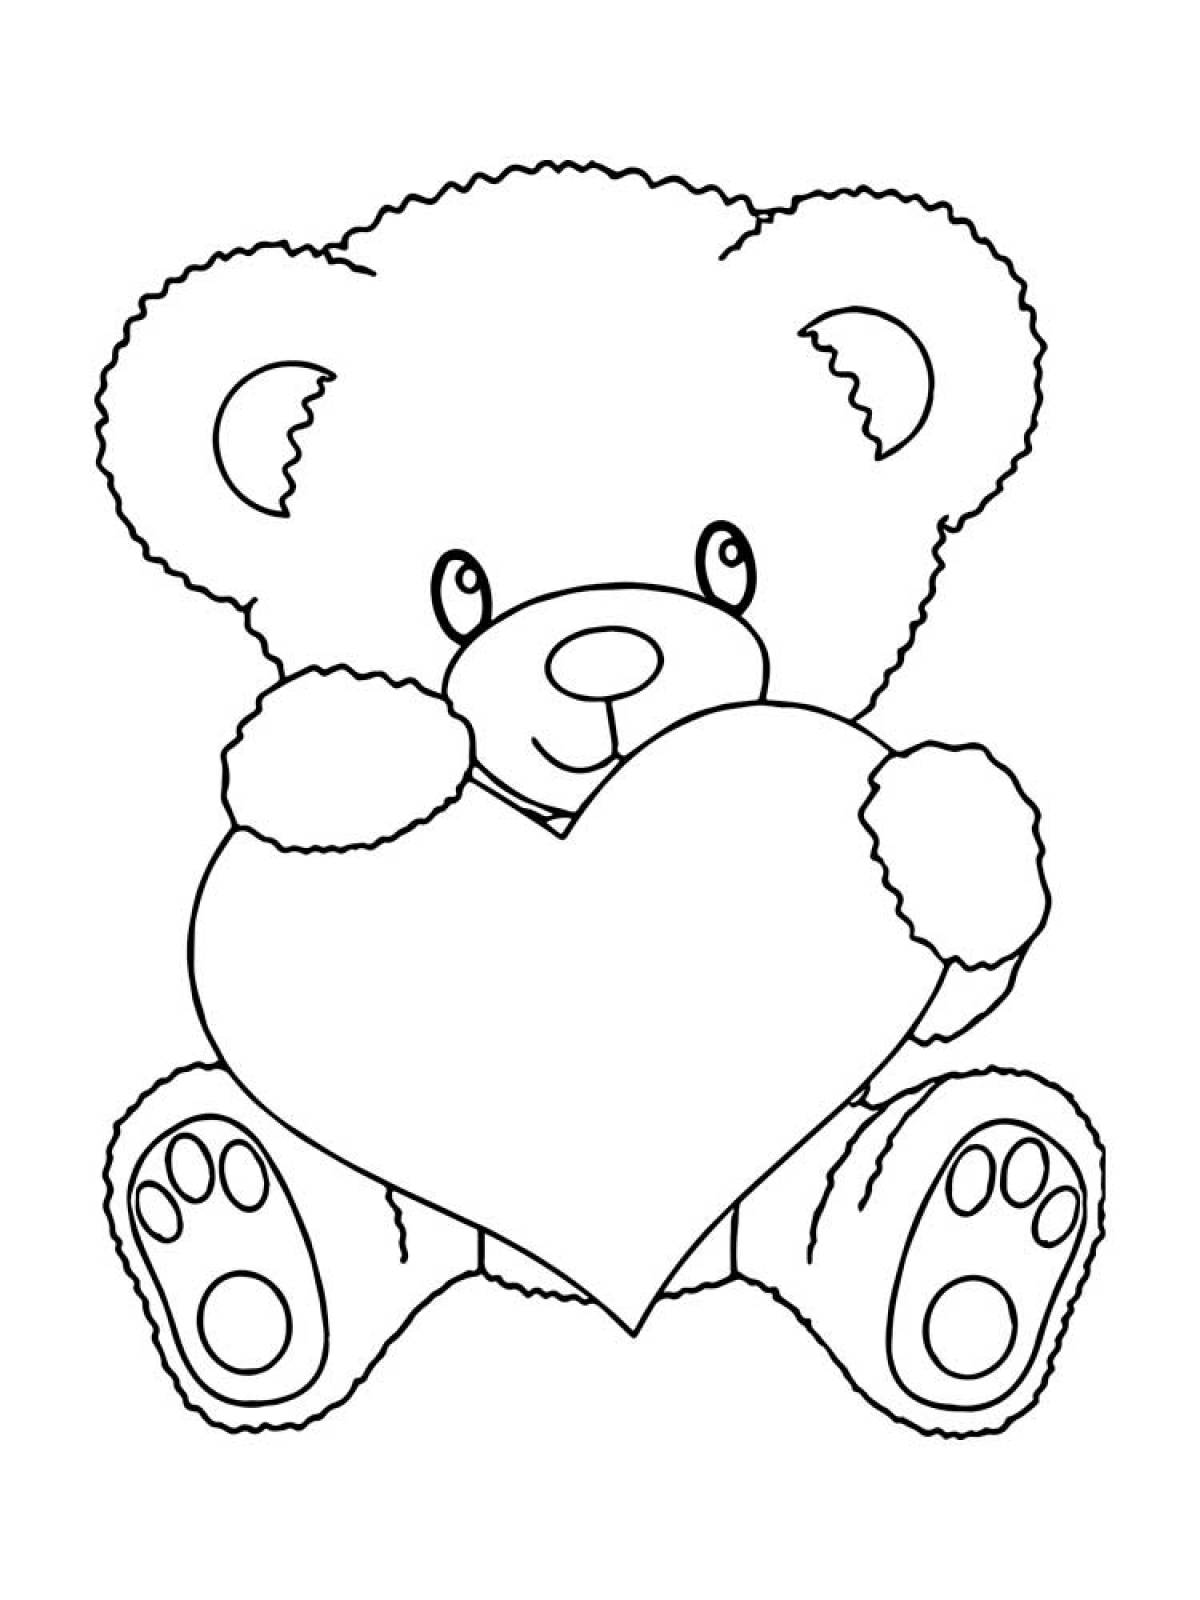 Рисунок медвежонка раскраска